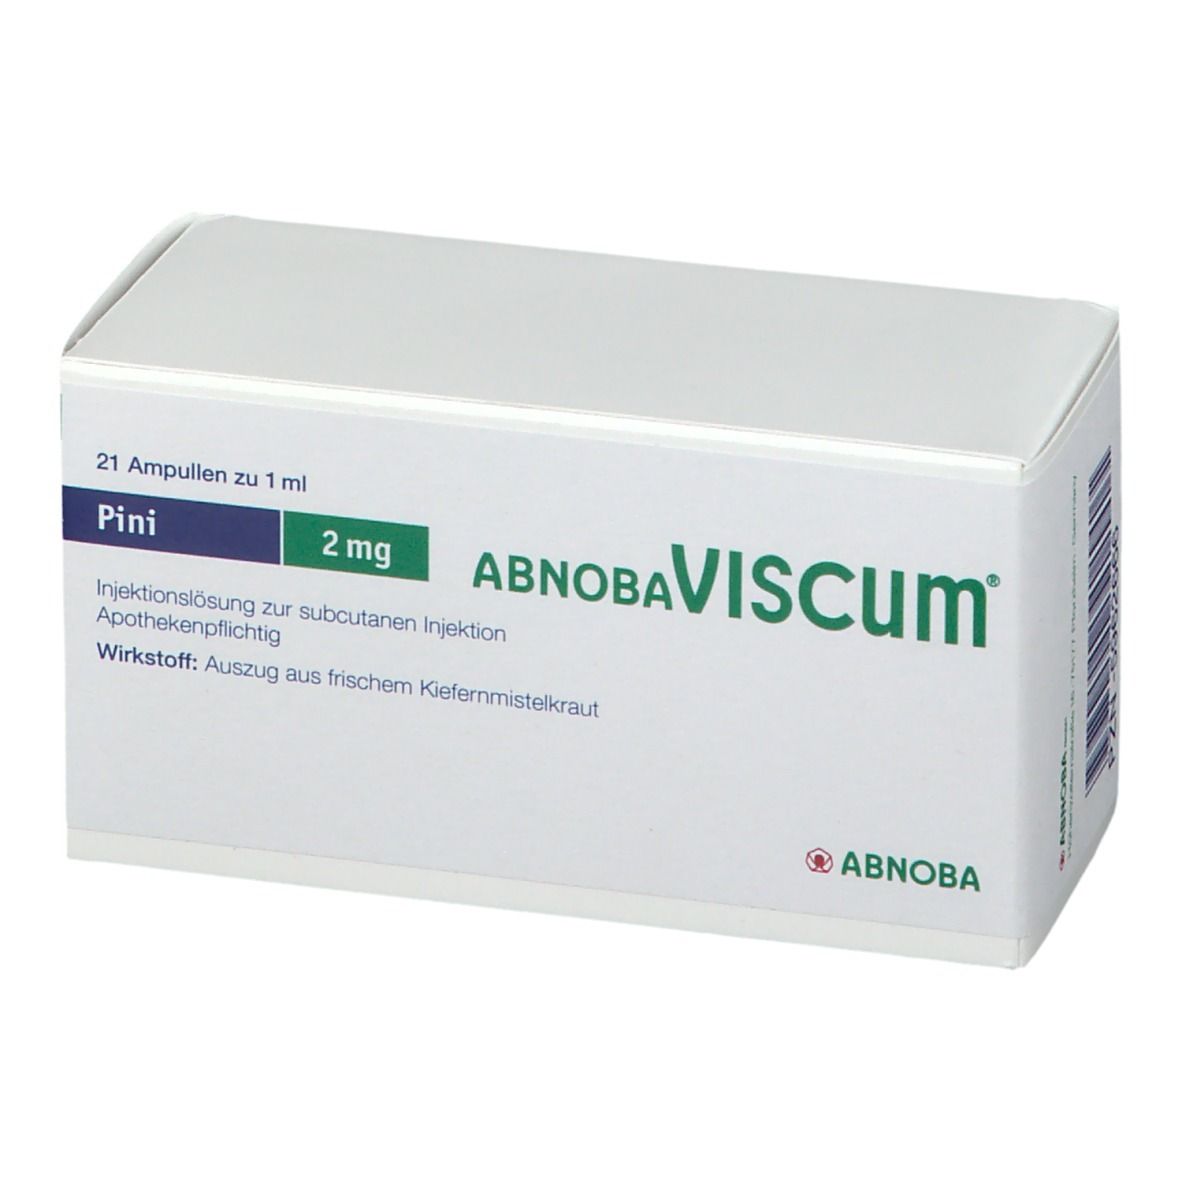 abnobaVISCUM® Pini 2 mg Ampullen